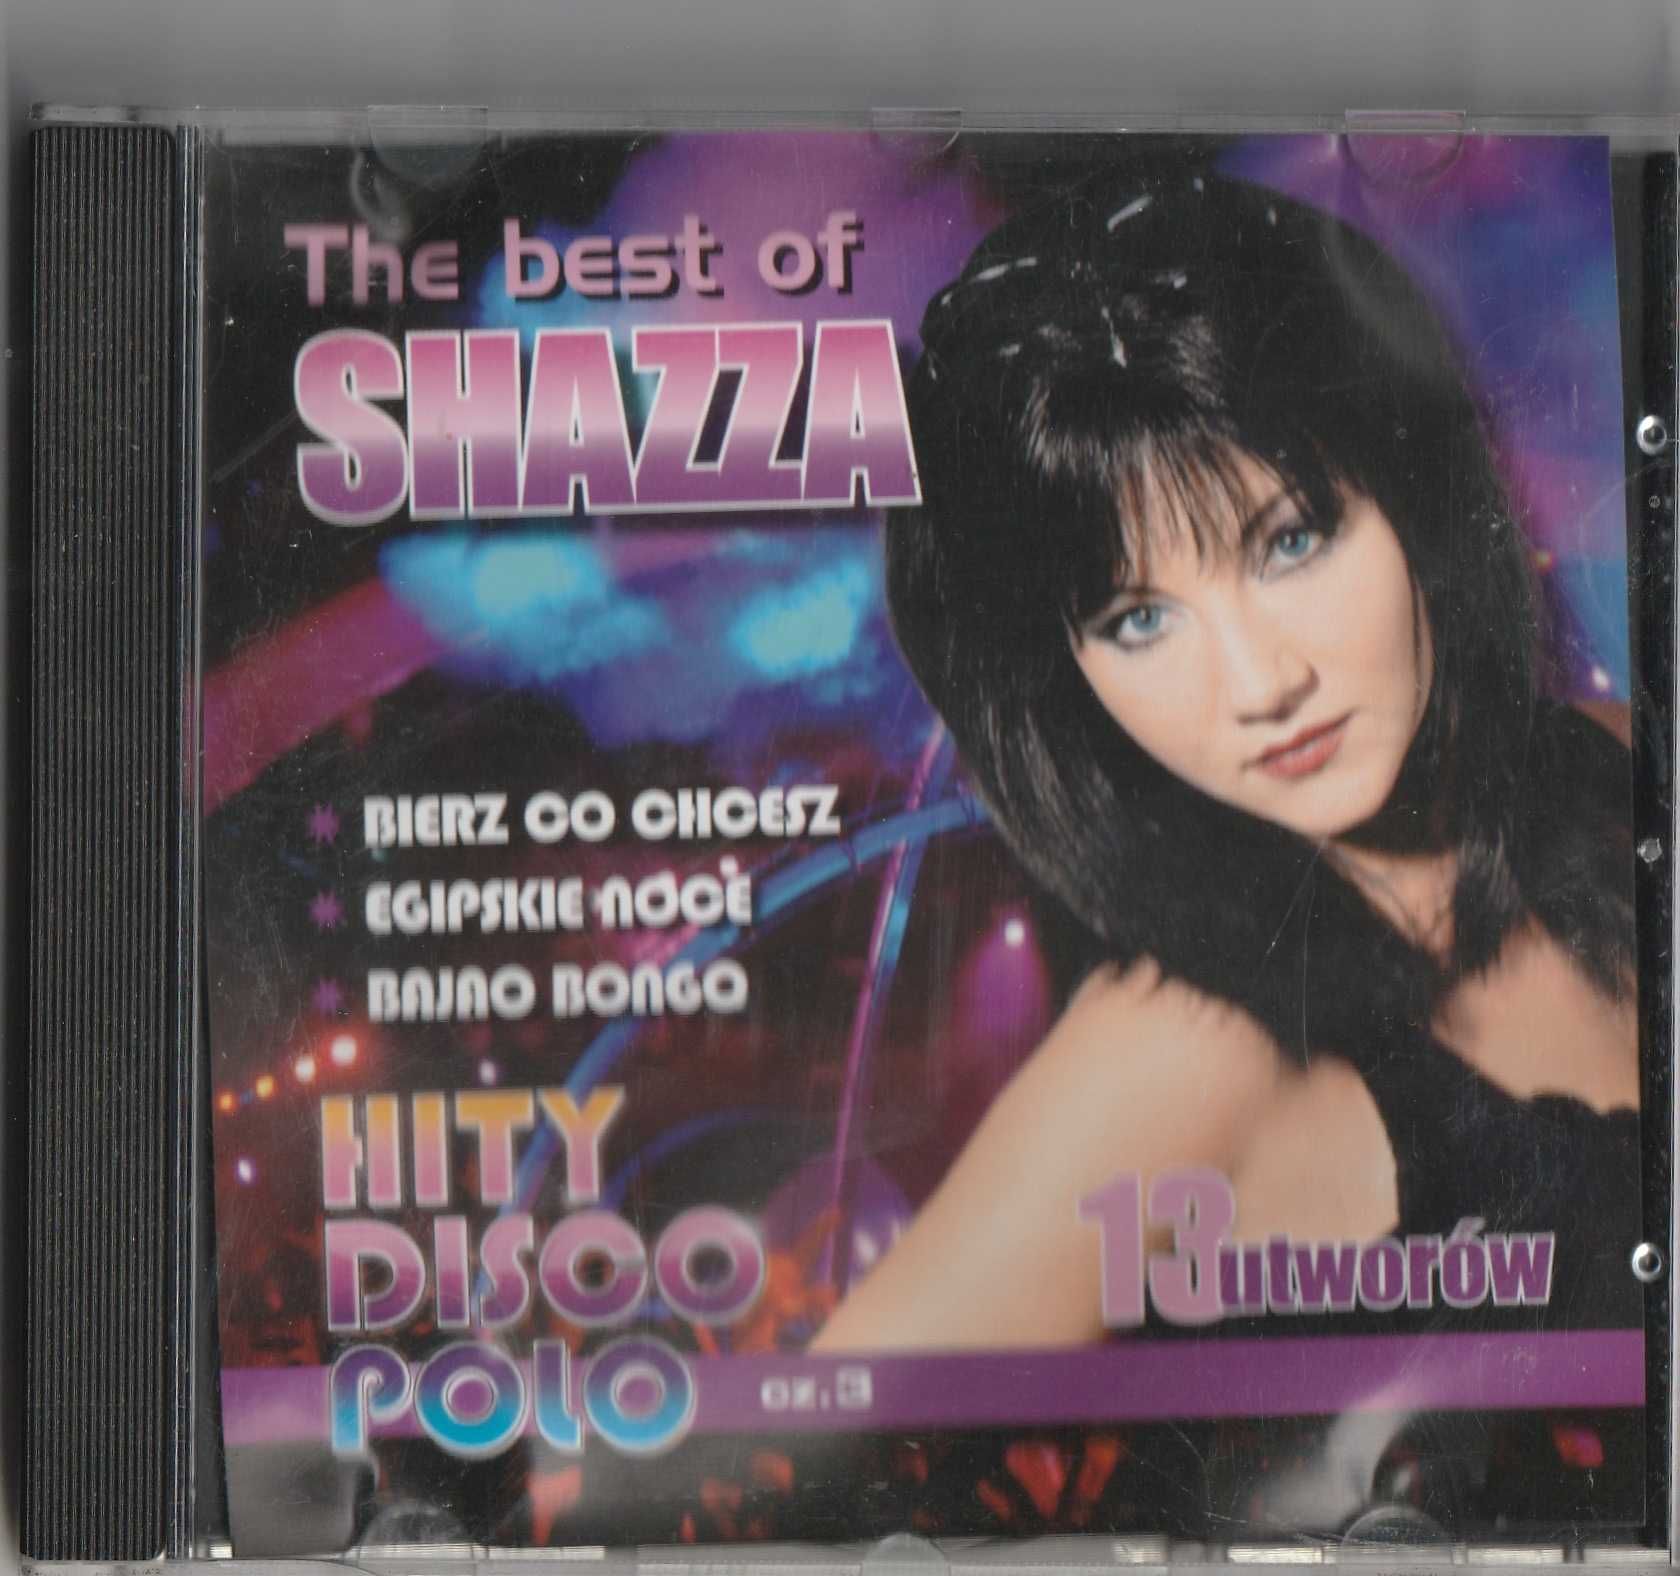 Shazza Hity Disco Polo The best of CD